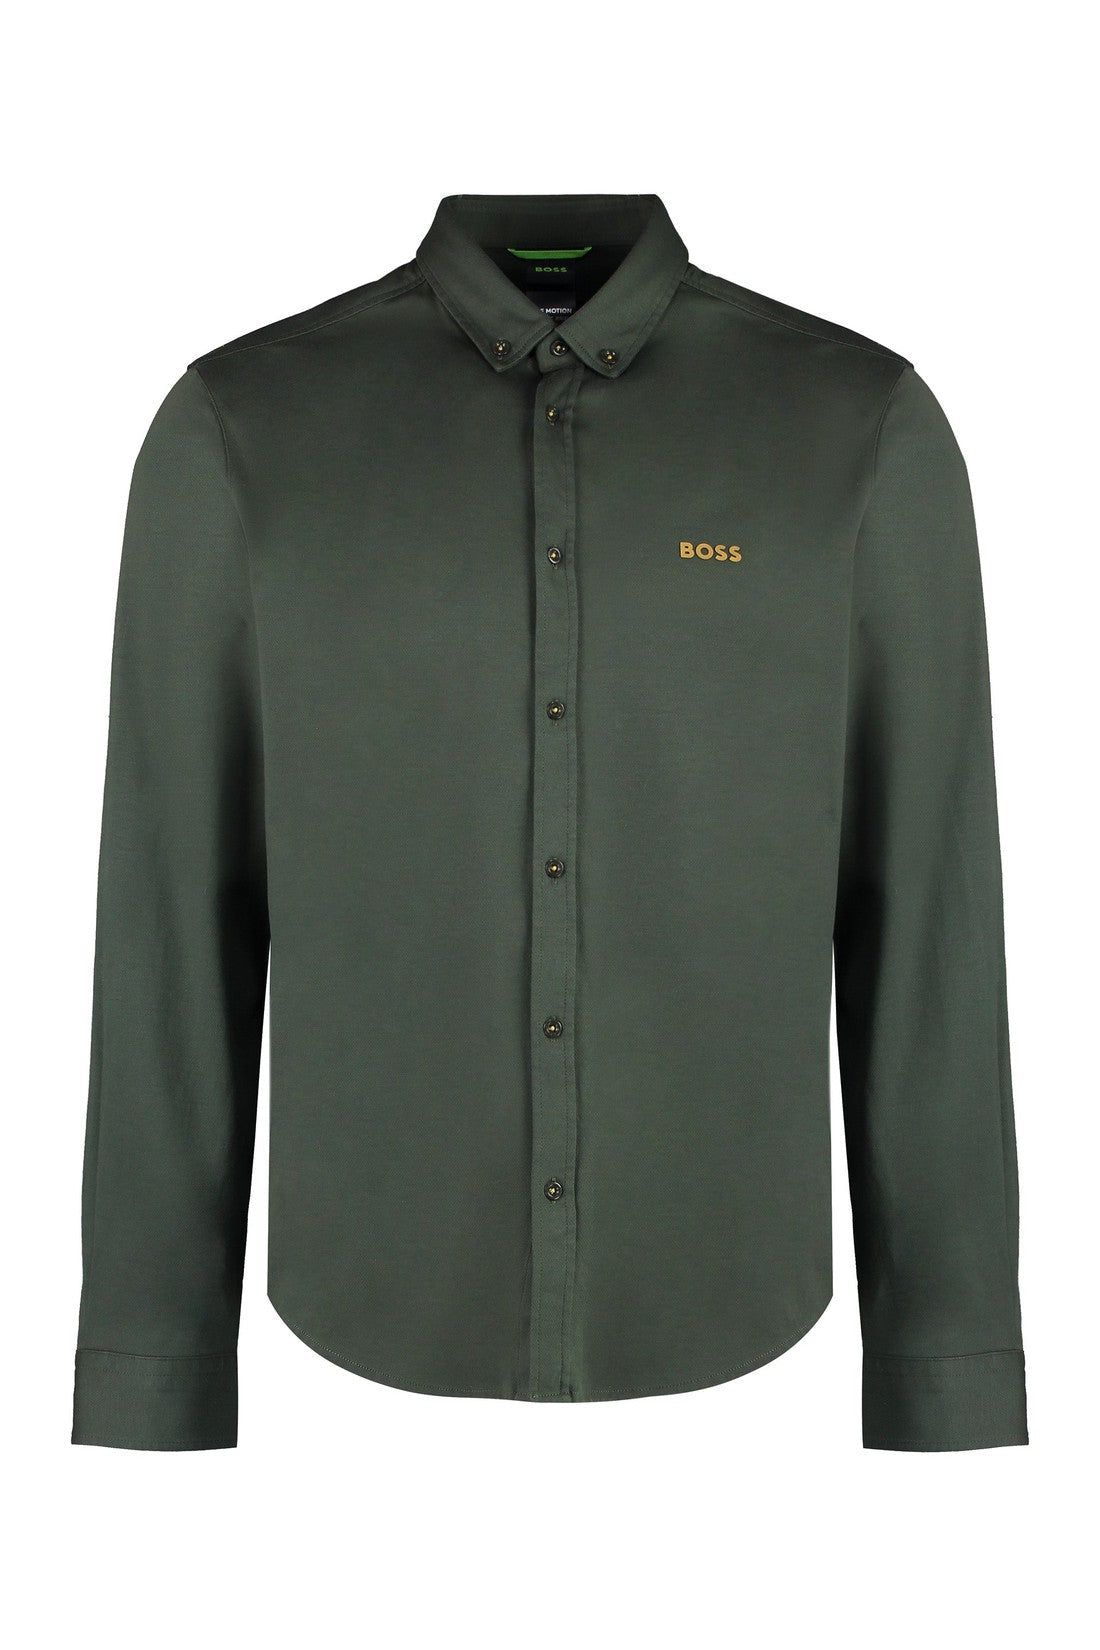 BOSS-OUTLET-SALE-Button-down collar cotton shirt-ARCHIVIST